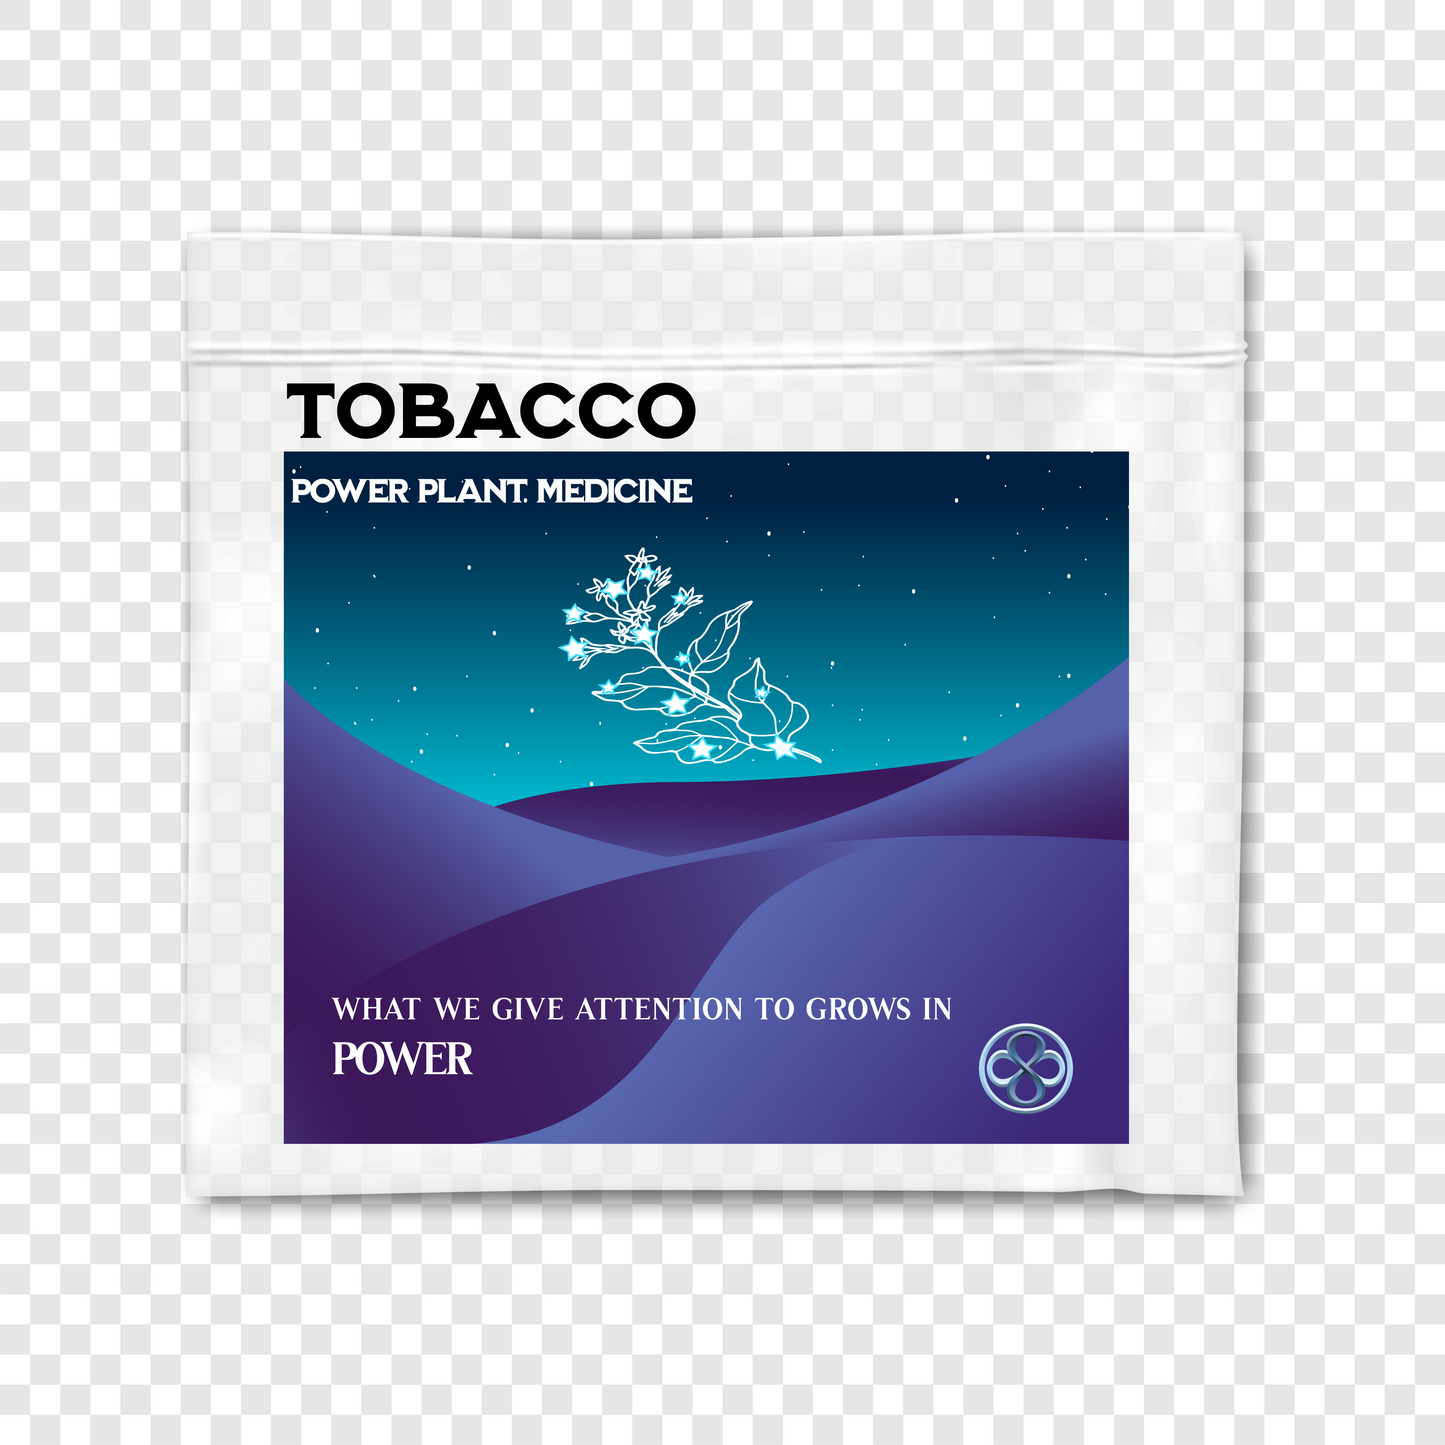 Tobacco - Power Plant Medicine